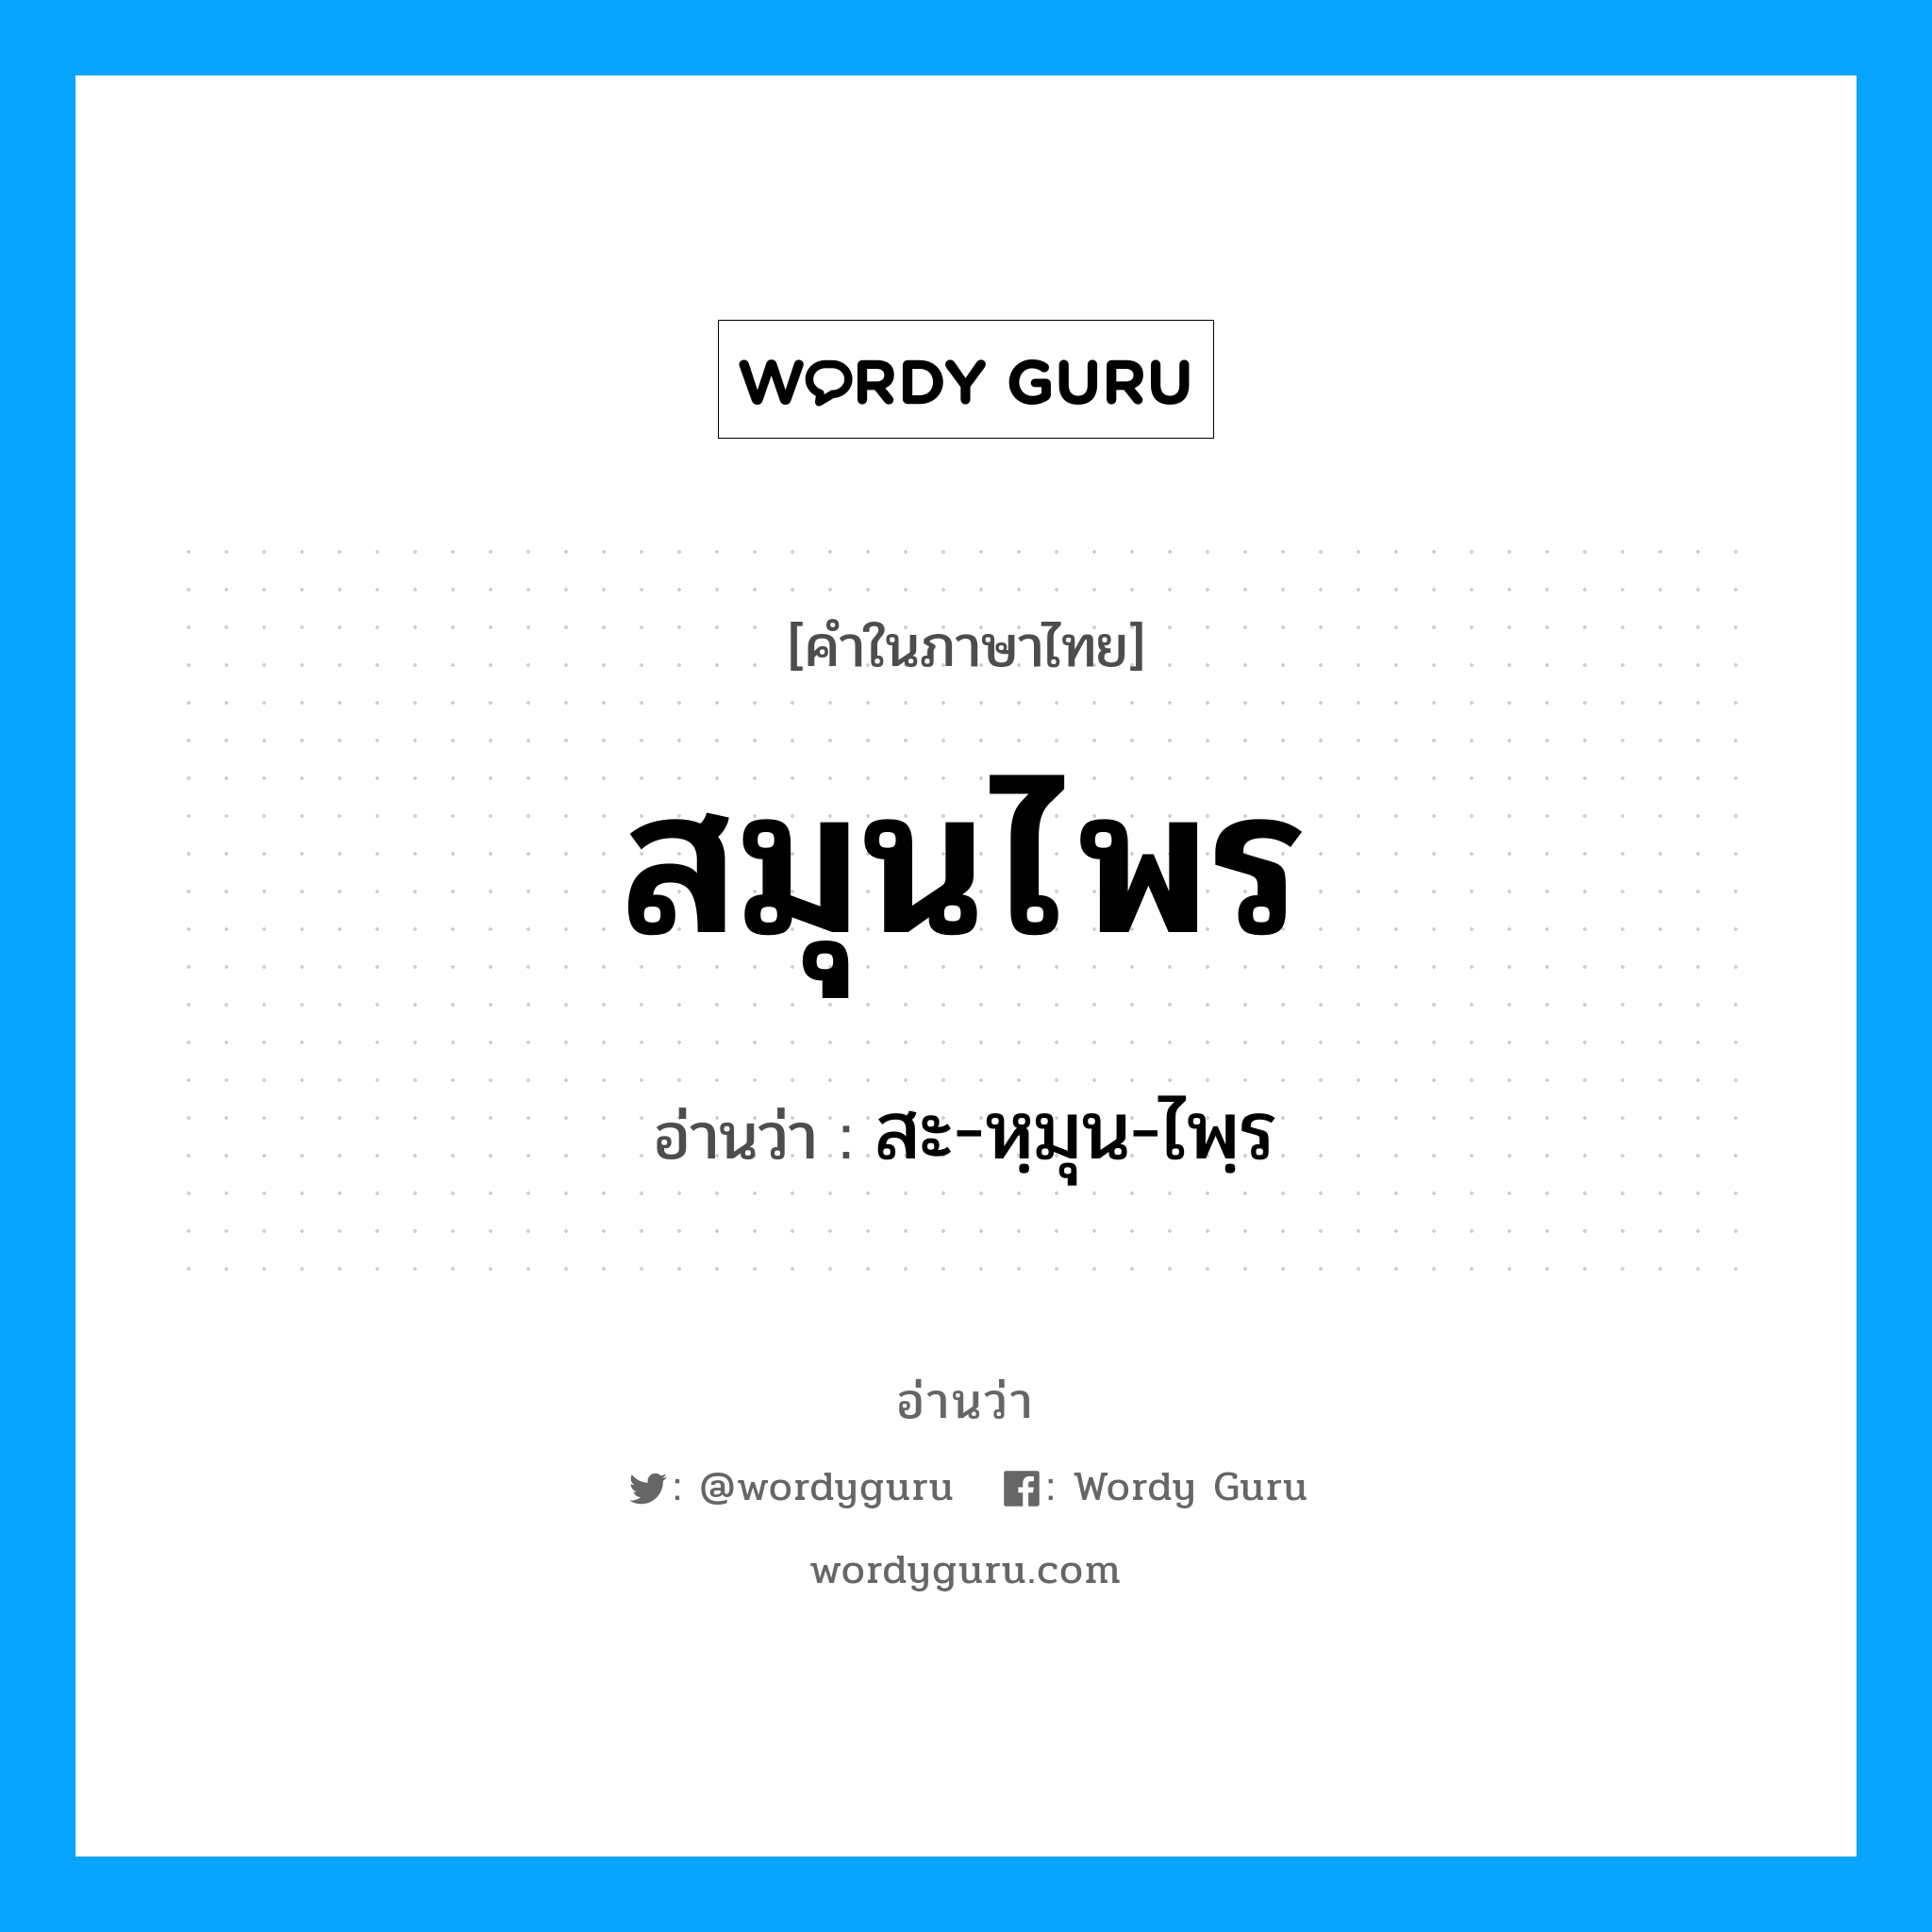 สะ-หฺมุน-ไพฺร เป็นคำอ่านของคำไหน?, คำในภาษาไทย สะ-หฺมุน-ไพฺร อ่านว่า สมุนไพร